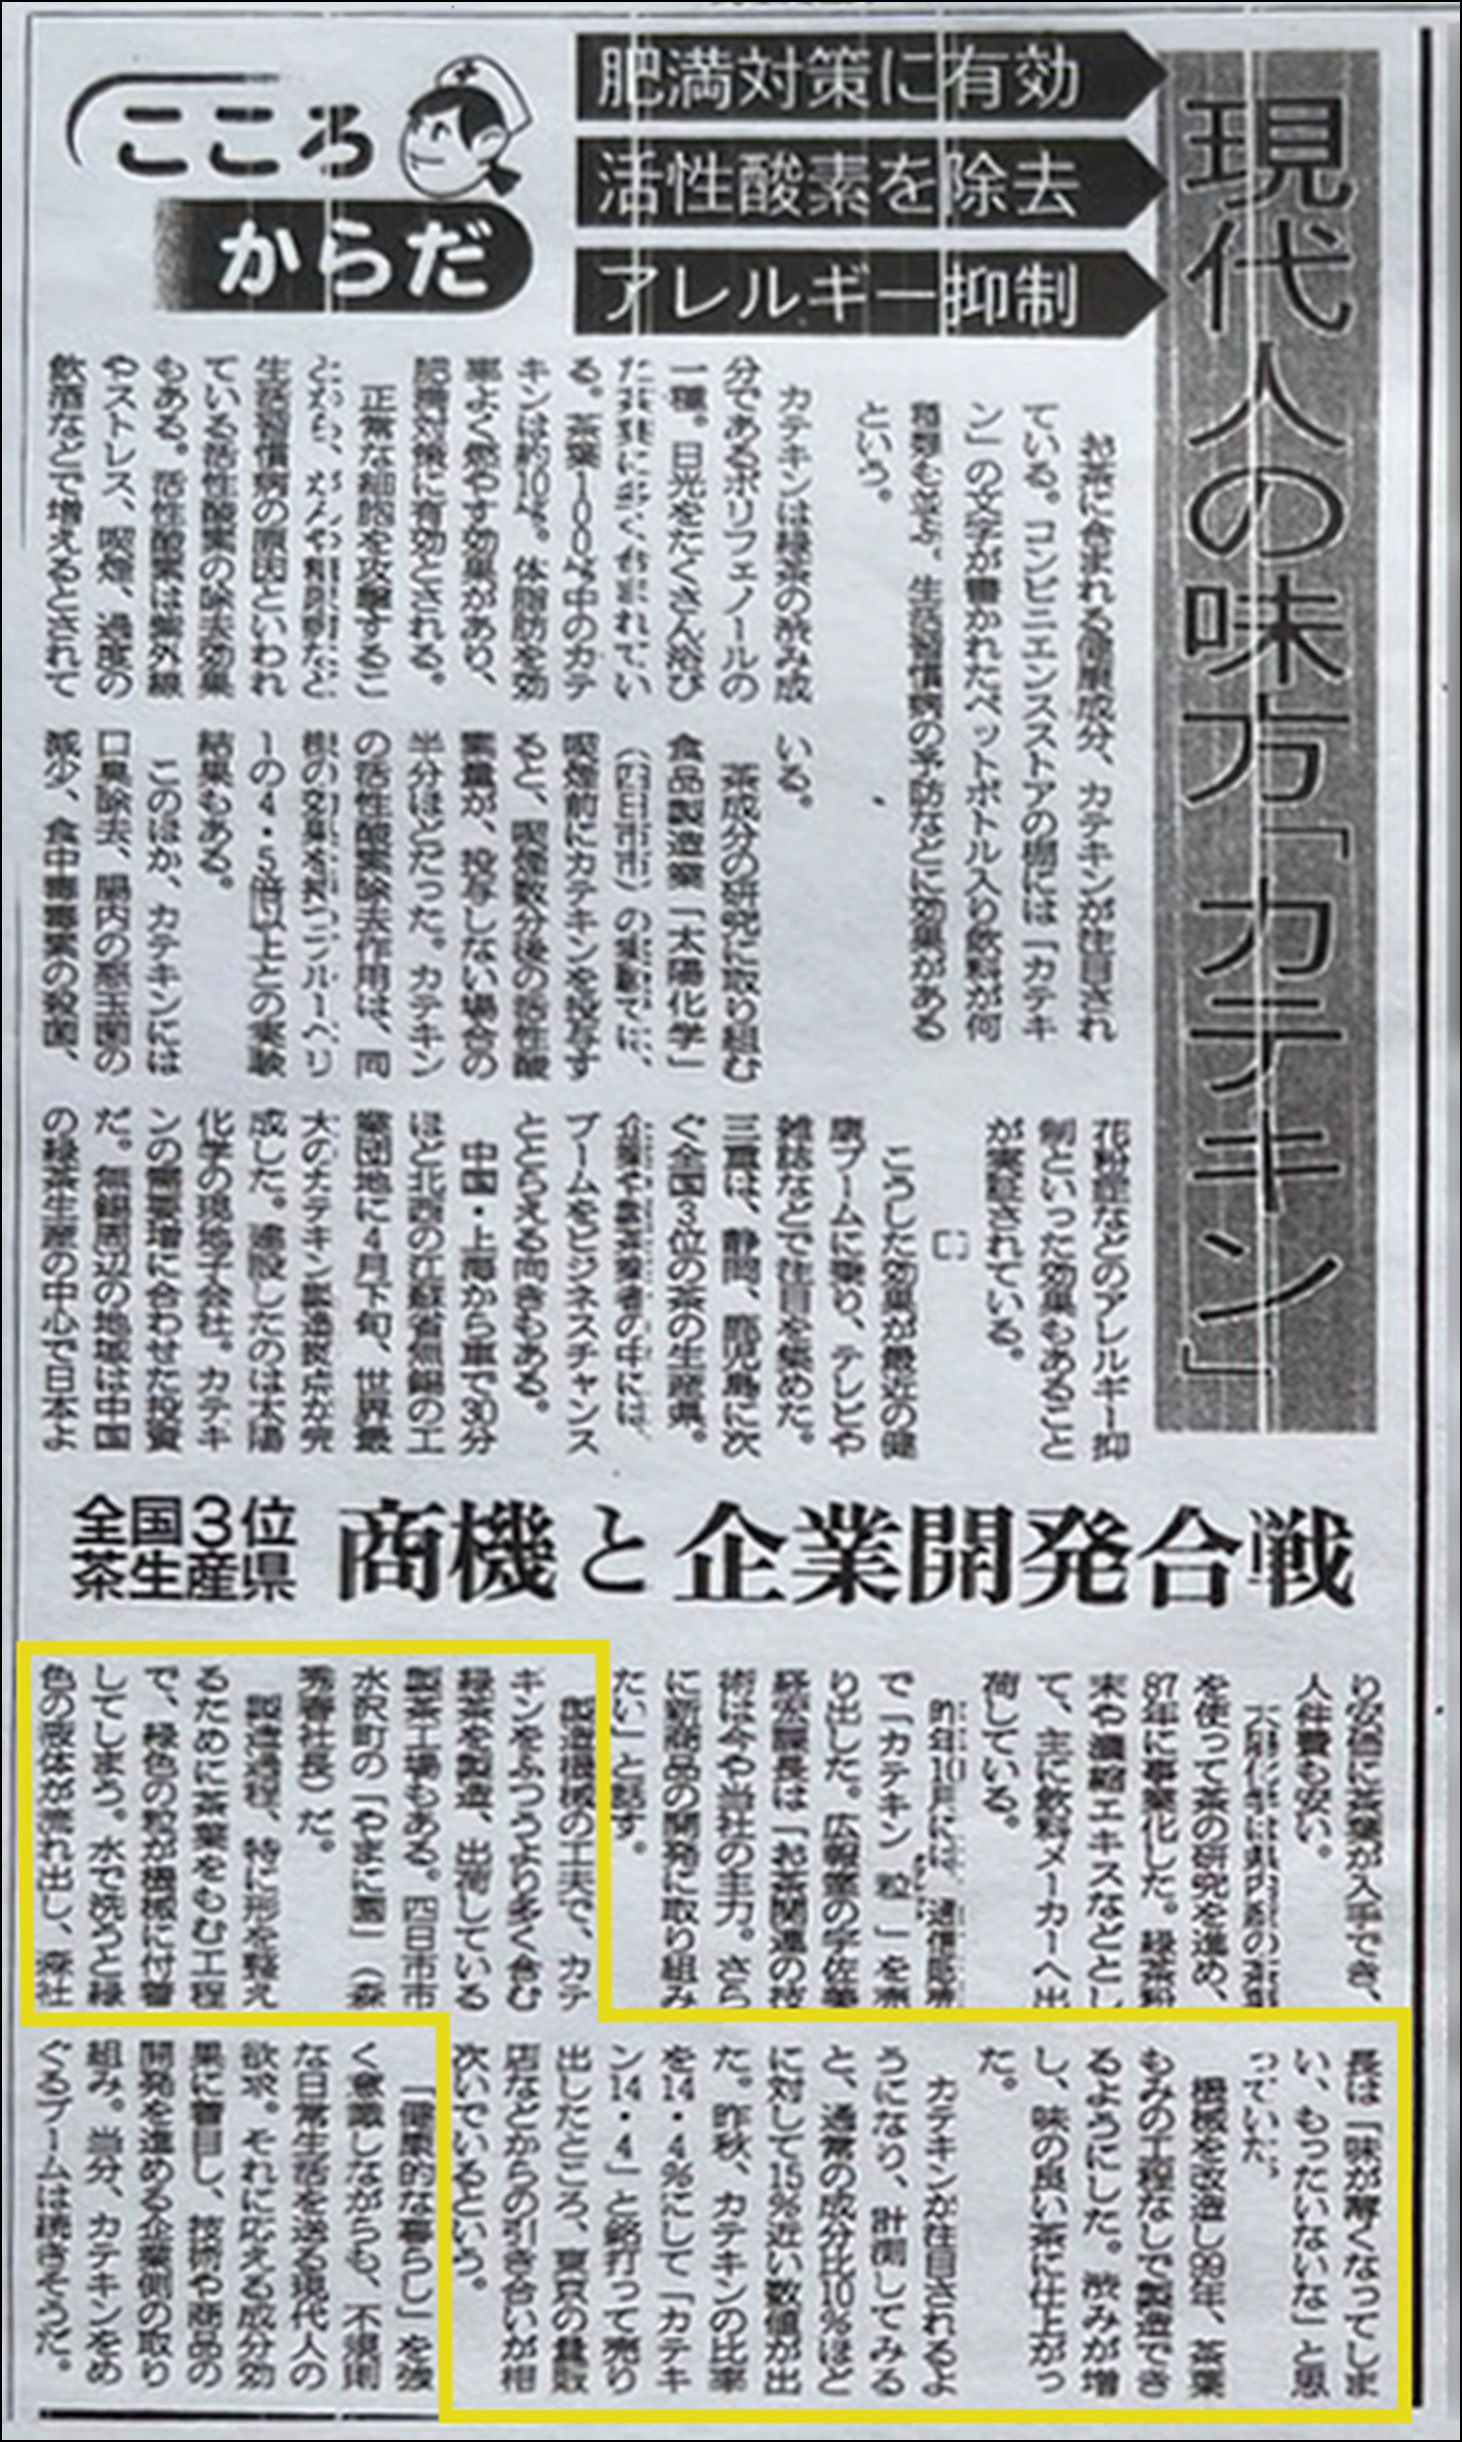 新聞記事(2004年6月19日 朝日新聞)の拡大写真